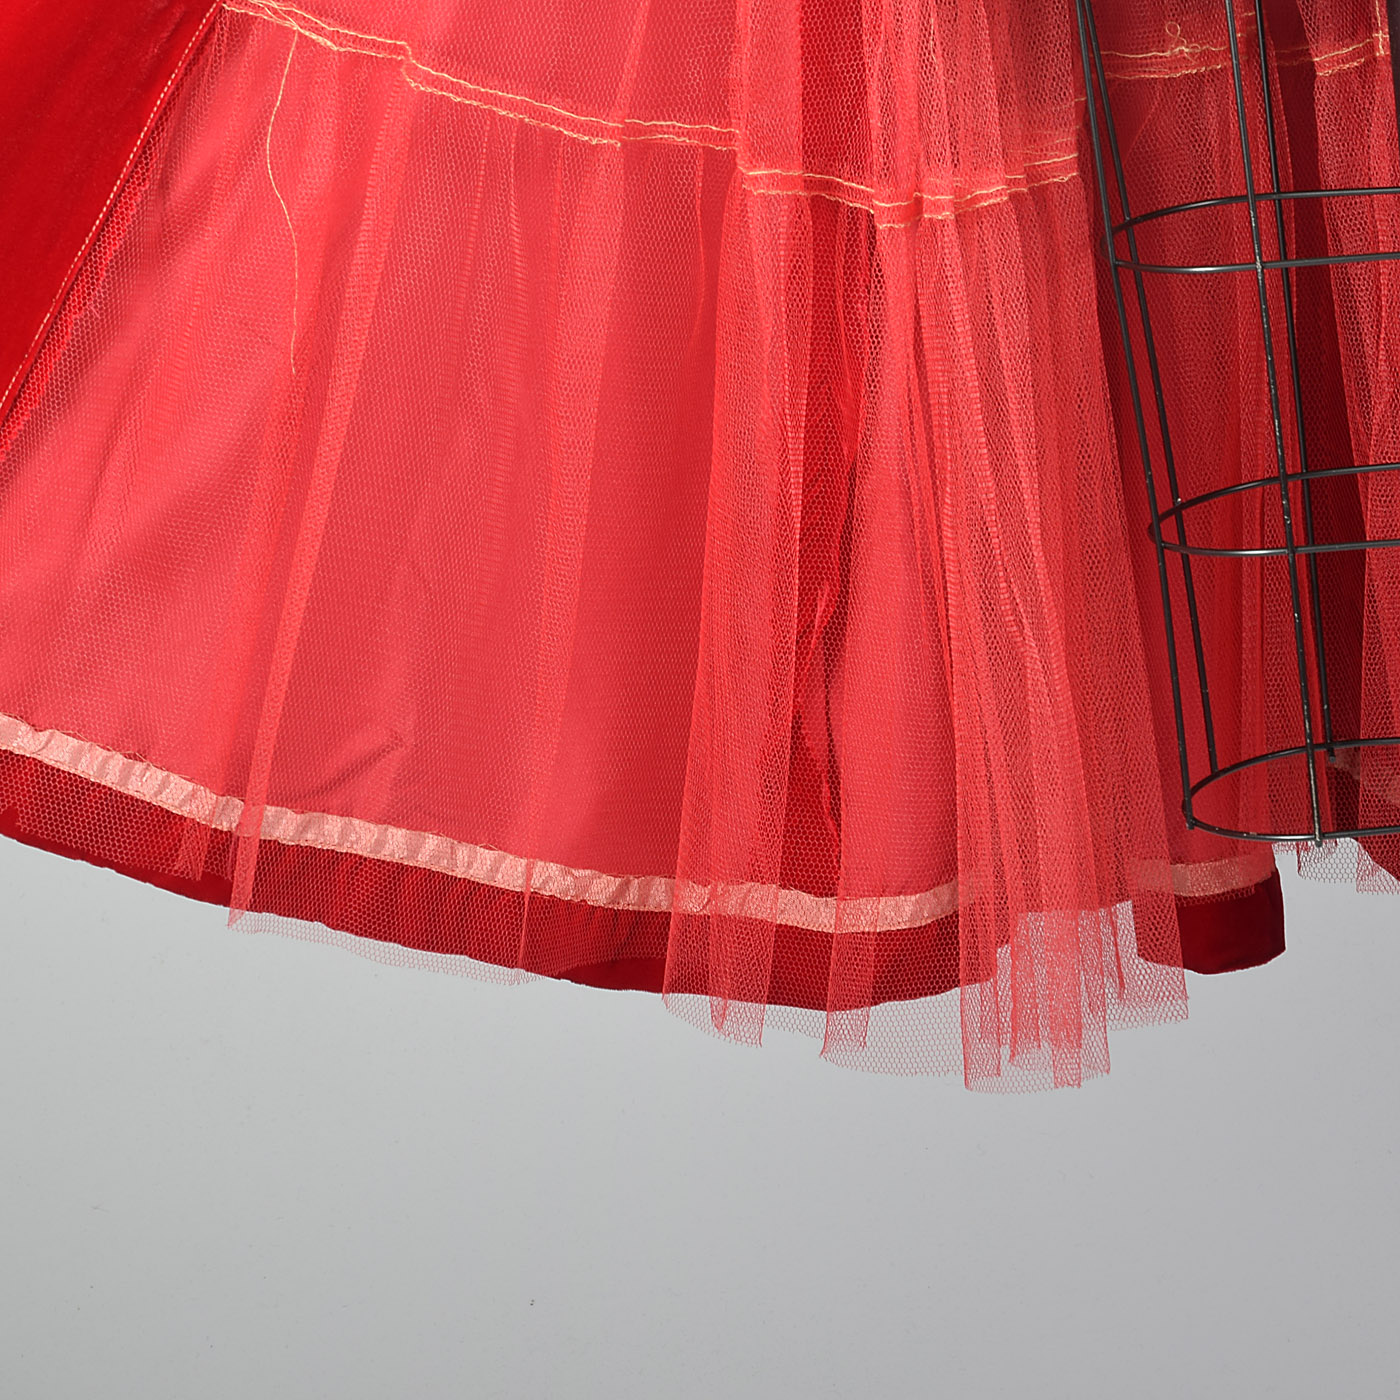 1950s Red Velvet Coat Dress with Mink Collar